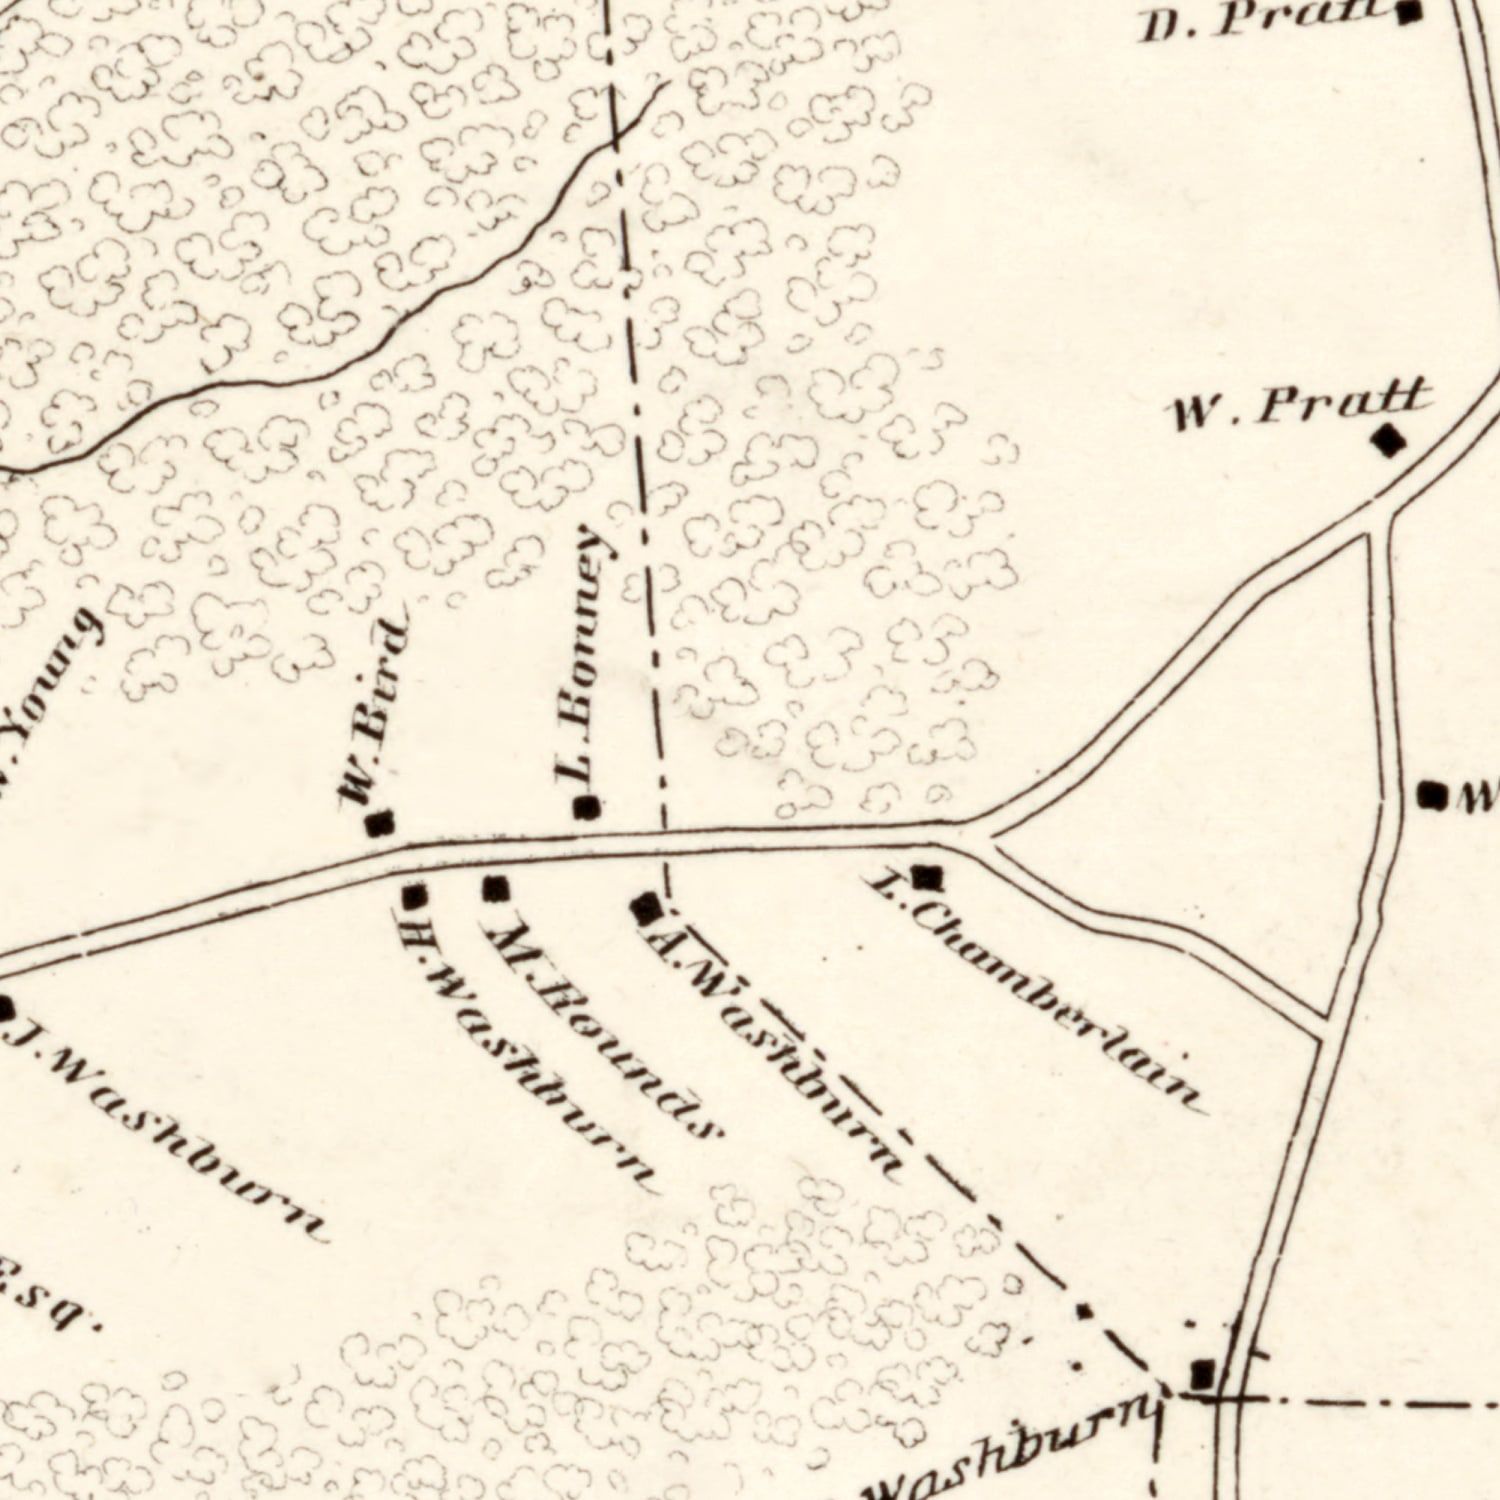 Vintage Map of Bridgewater County, Massachusetts 1848